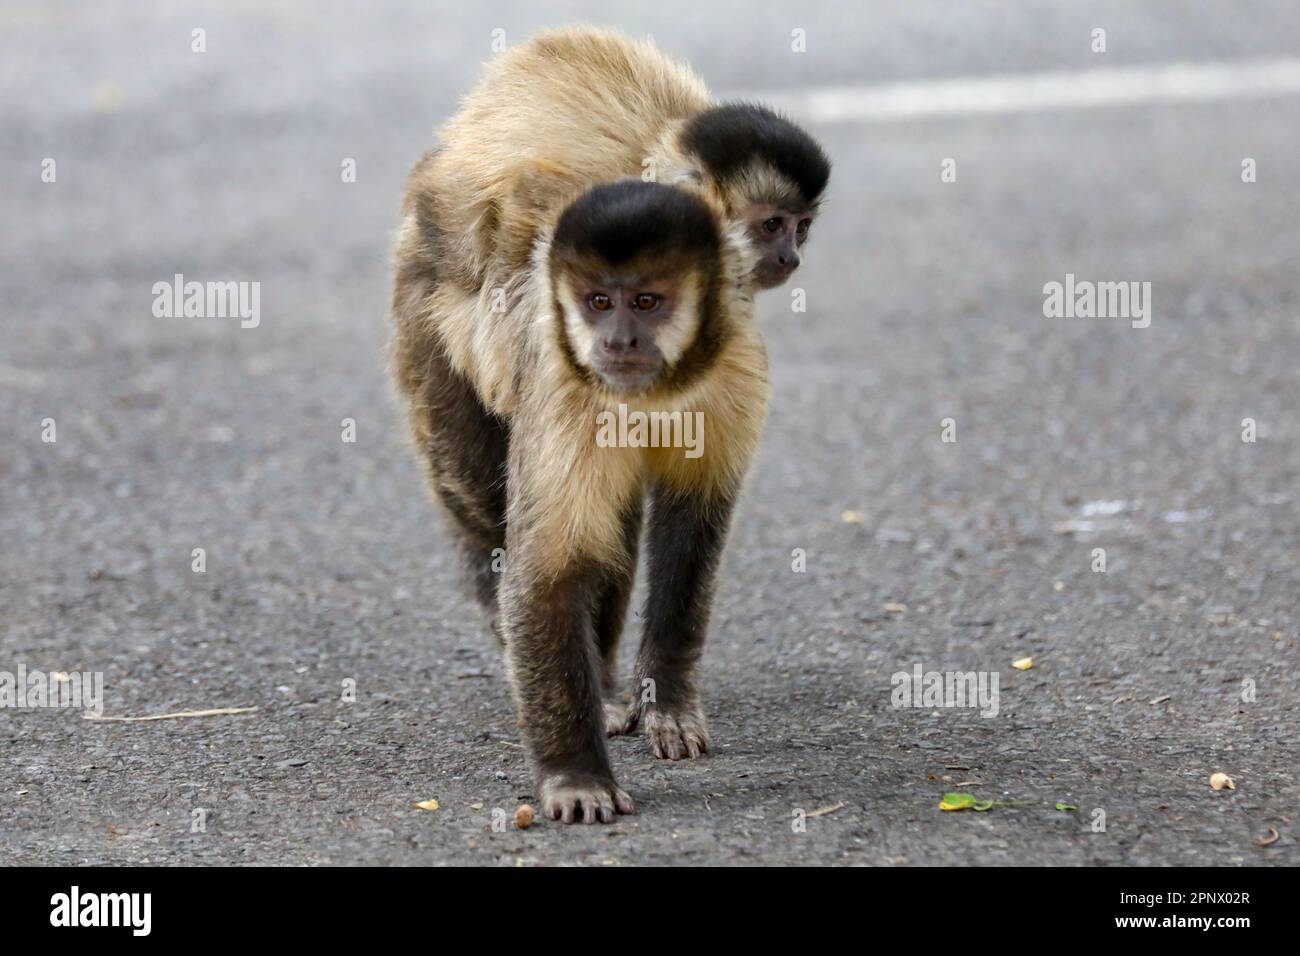 Singe Capuchin (sapajus), singe brésilien typique Banque D'Images